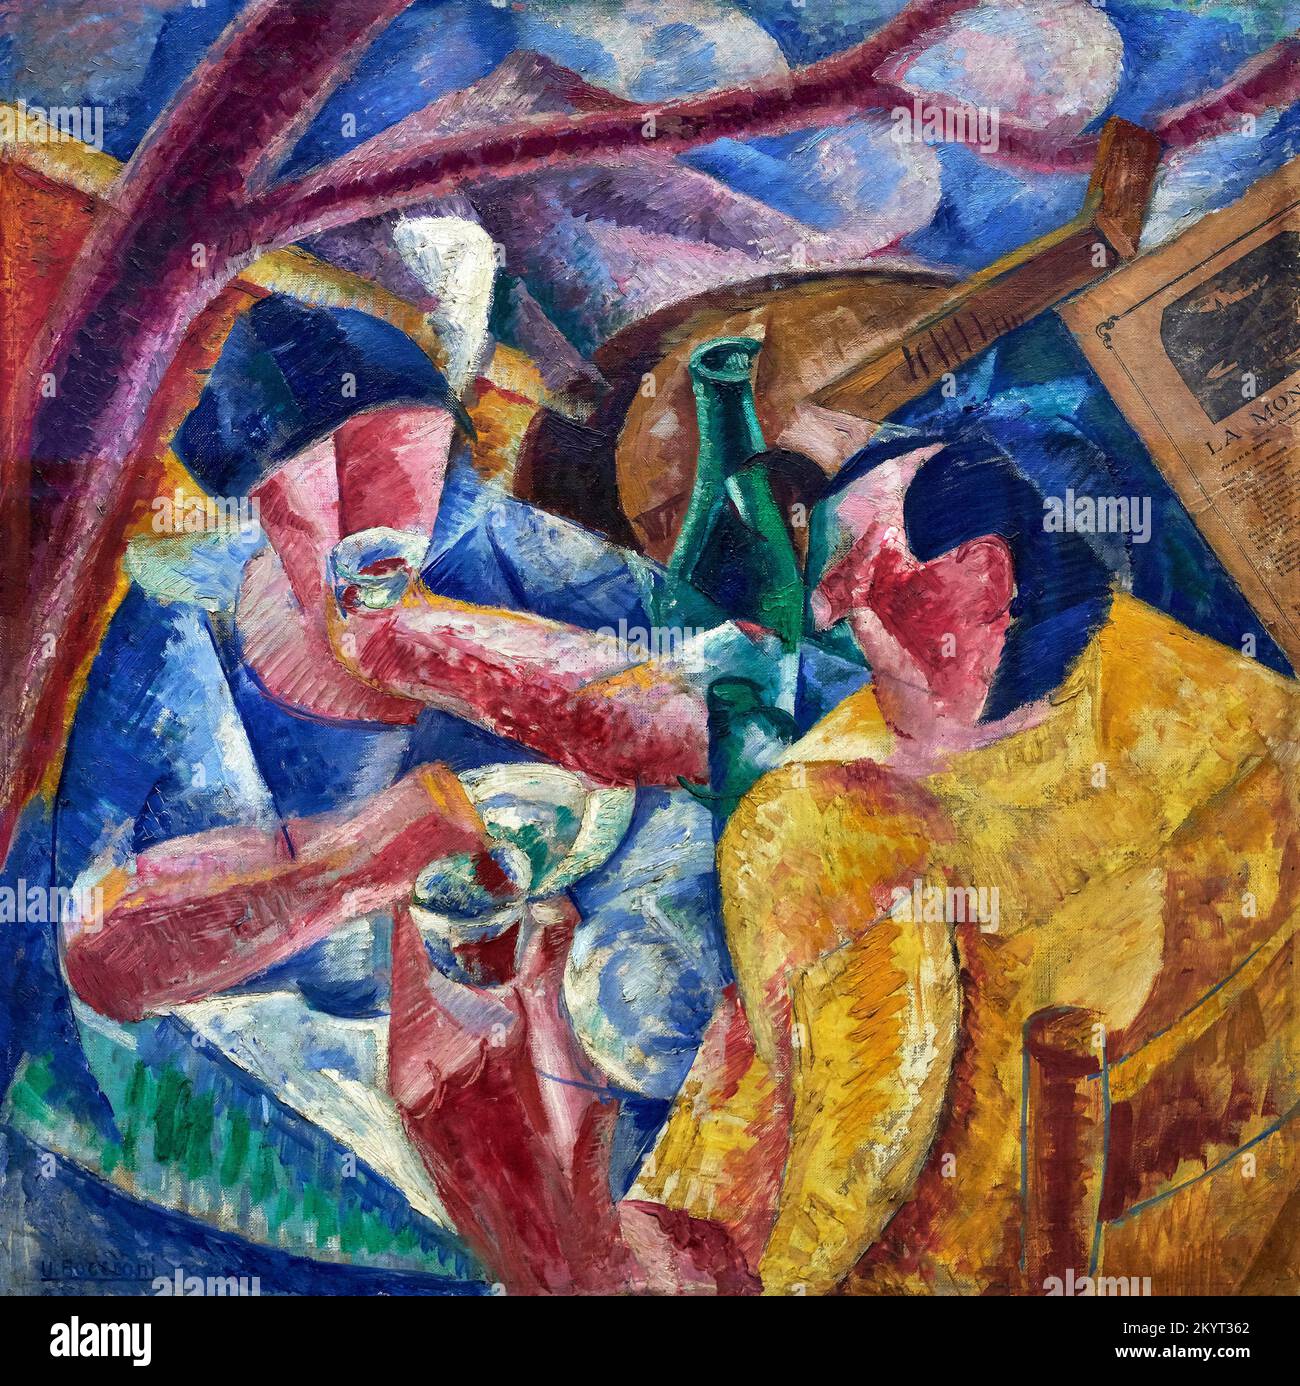 Sotto il pergolato a Napoli - olio e collage su tela - Umberto Boccioni - 1914 - Milano, Museo del Novecento Foto Stock